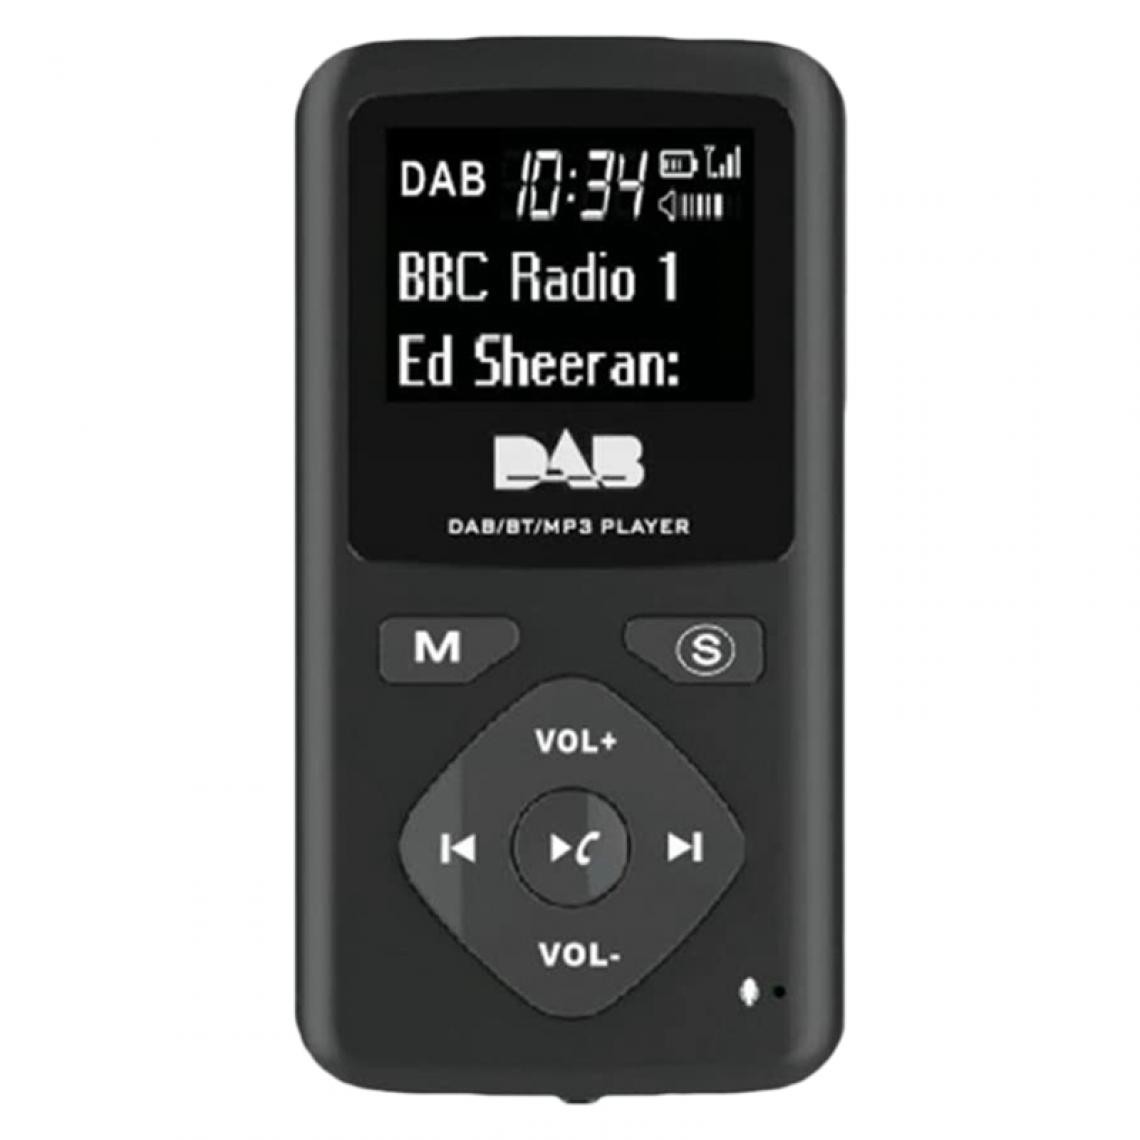 Universal - Radio numérique DAB/DAB Bluetooth 4.0 Poche personnelle FM Mini casque radio portable MP3 USB pour la maison |(Le noir) - Radio